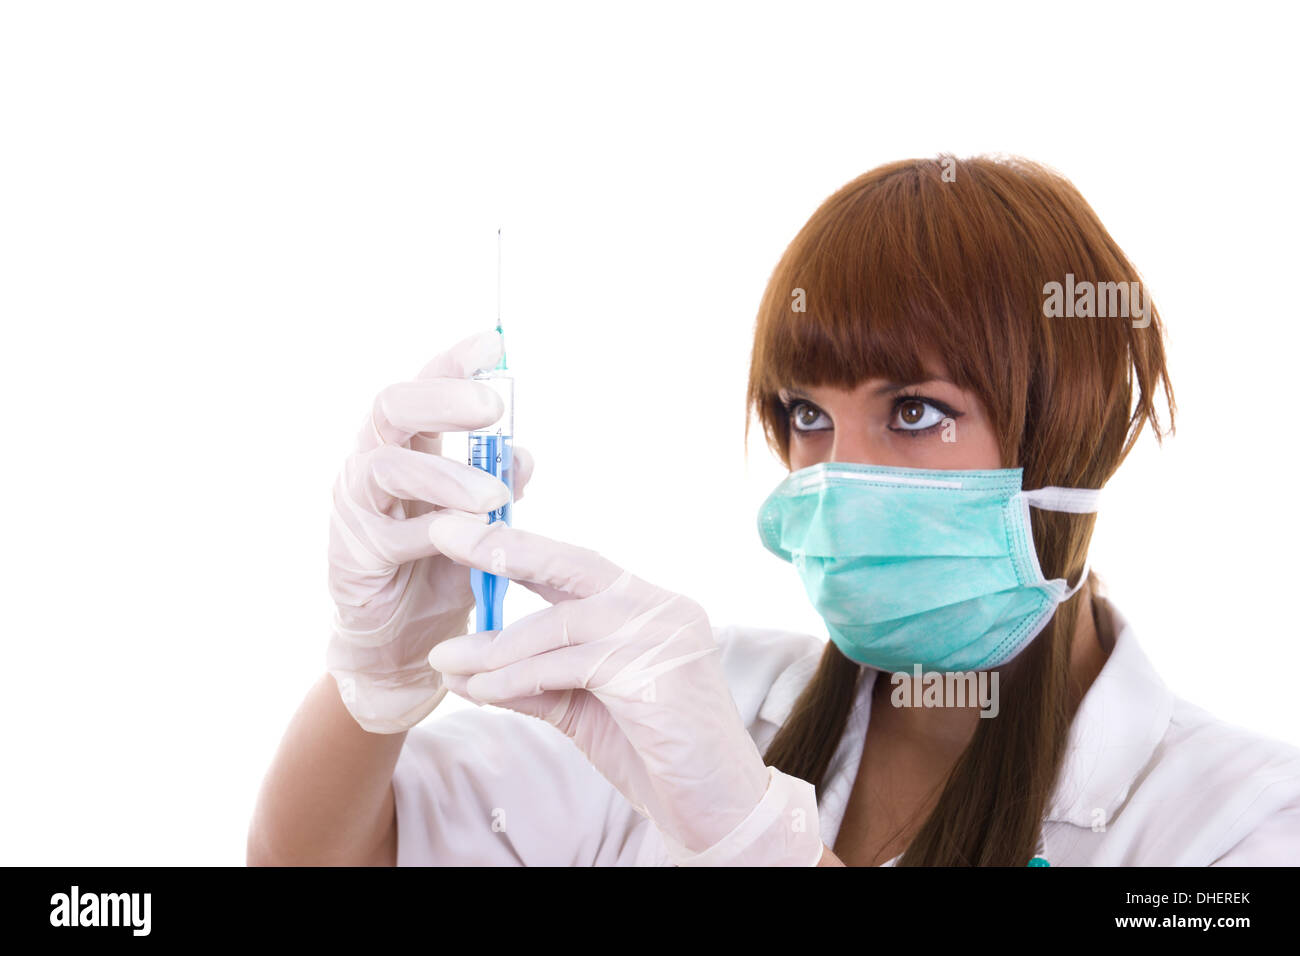 Infirmière en médecine avec une seringue et aiguille dans les mains Banque D'Images